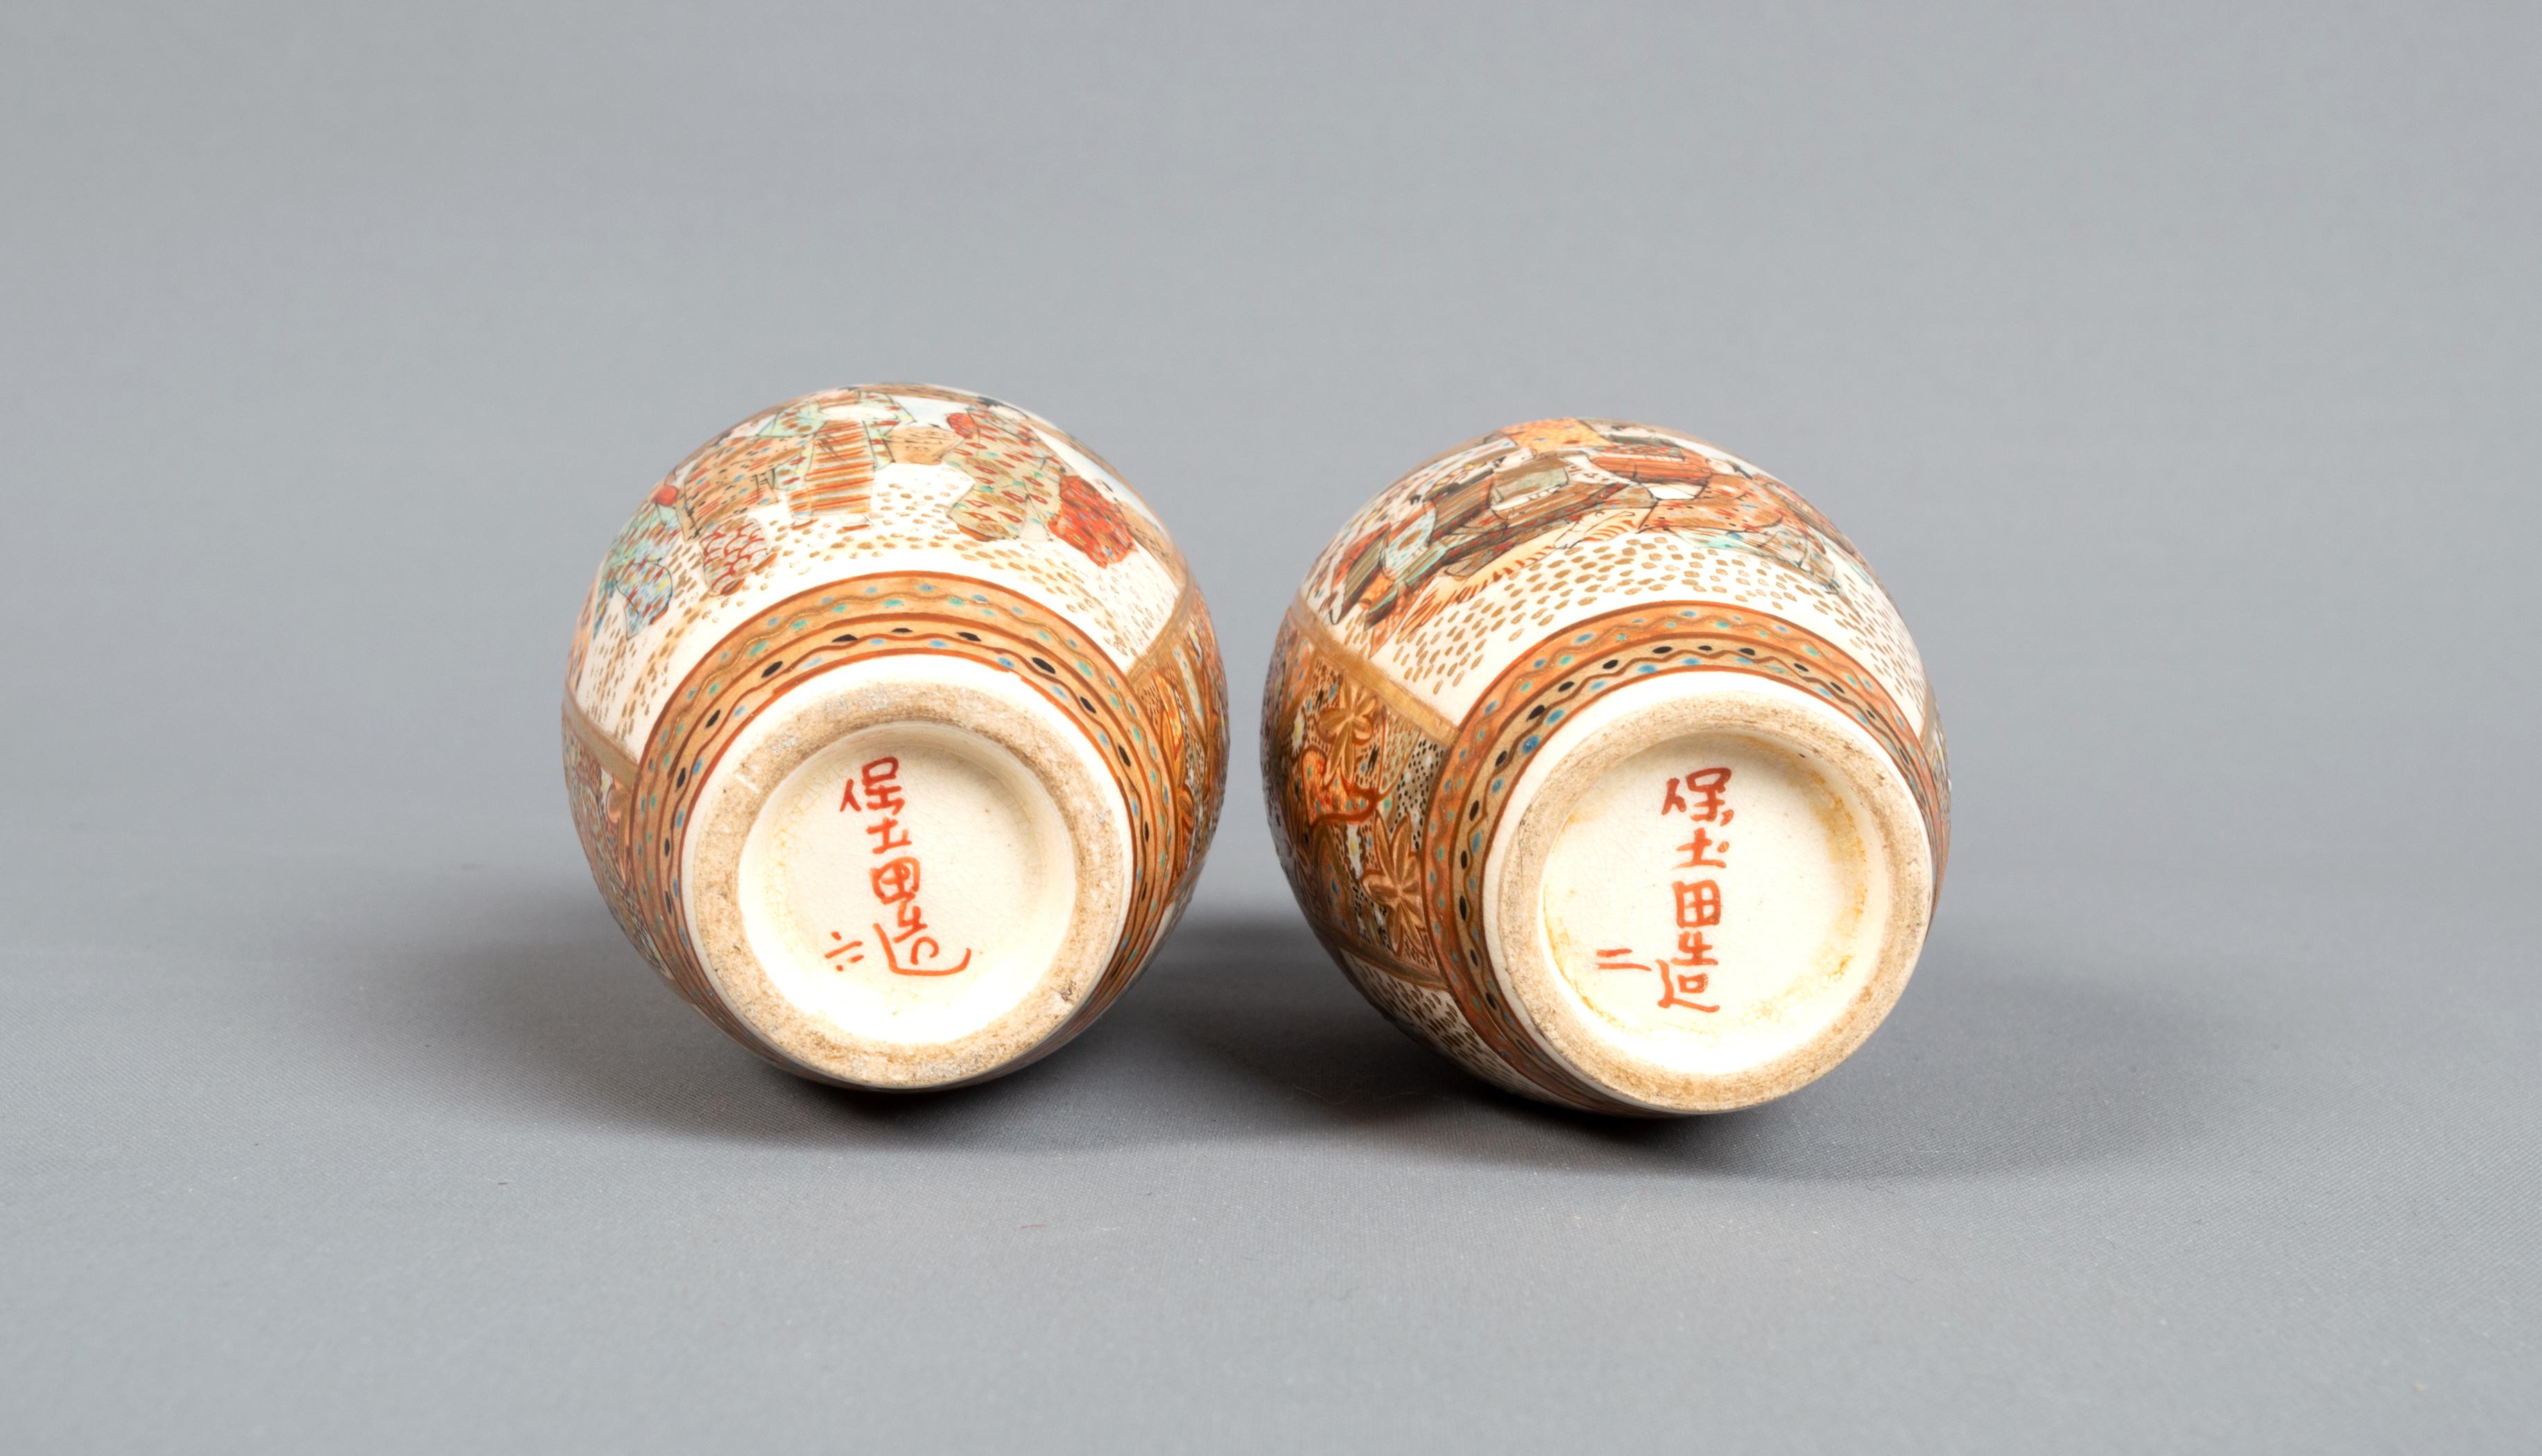 miniature japanese vases